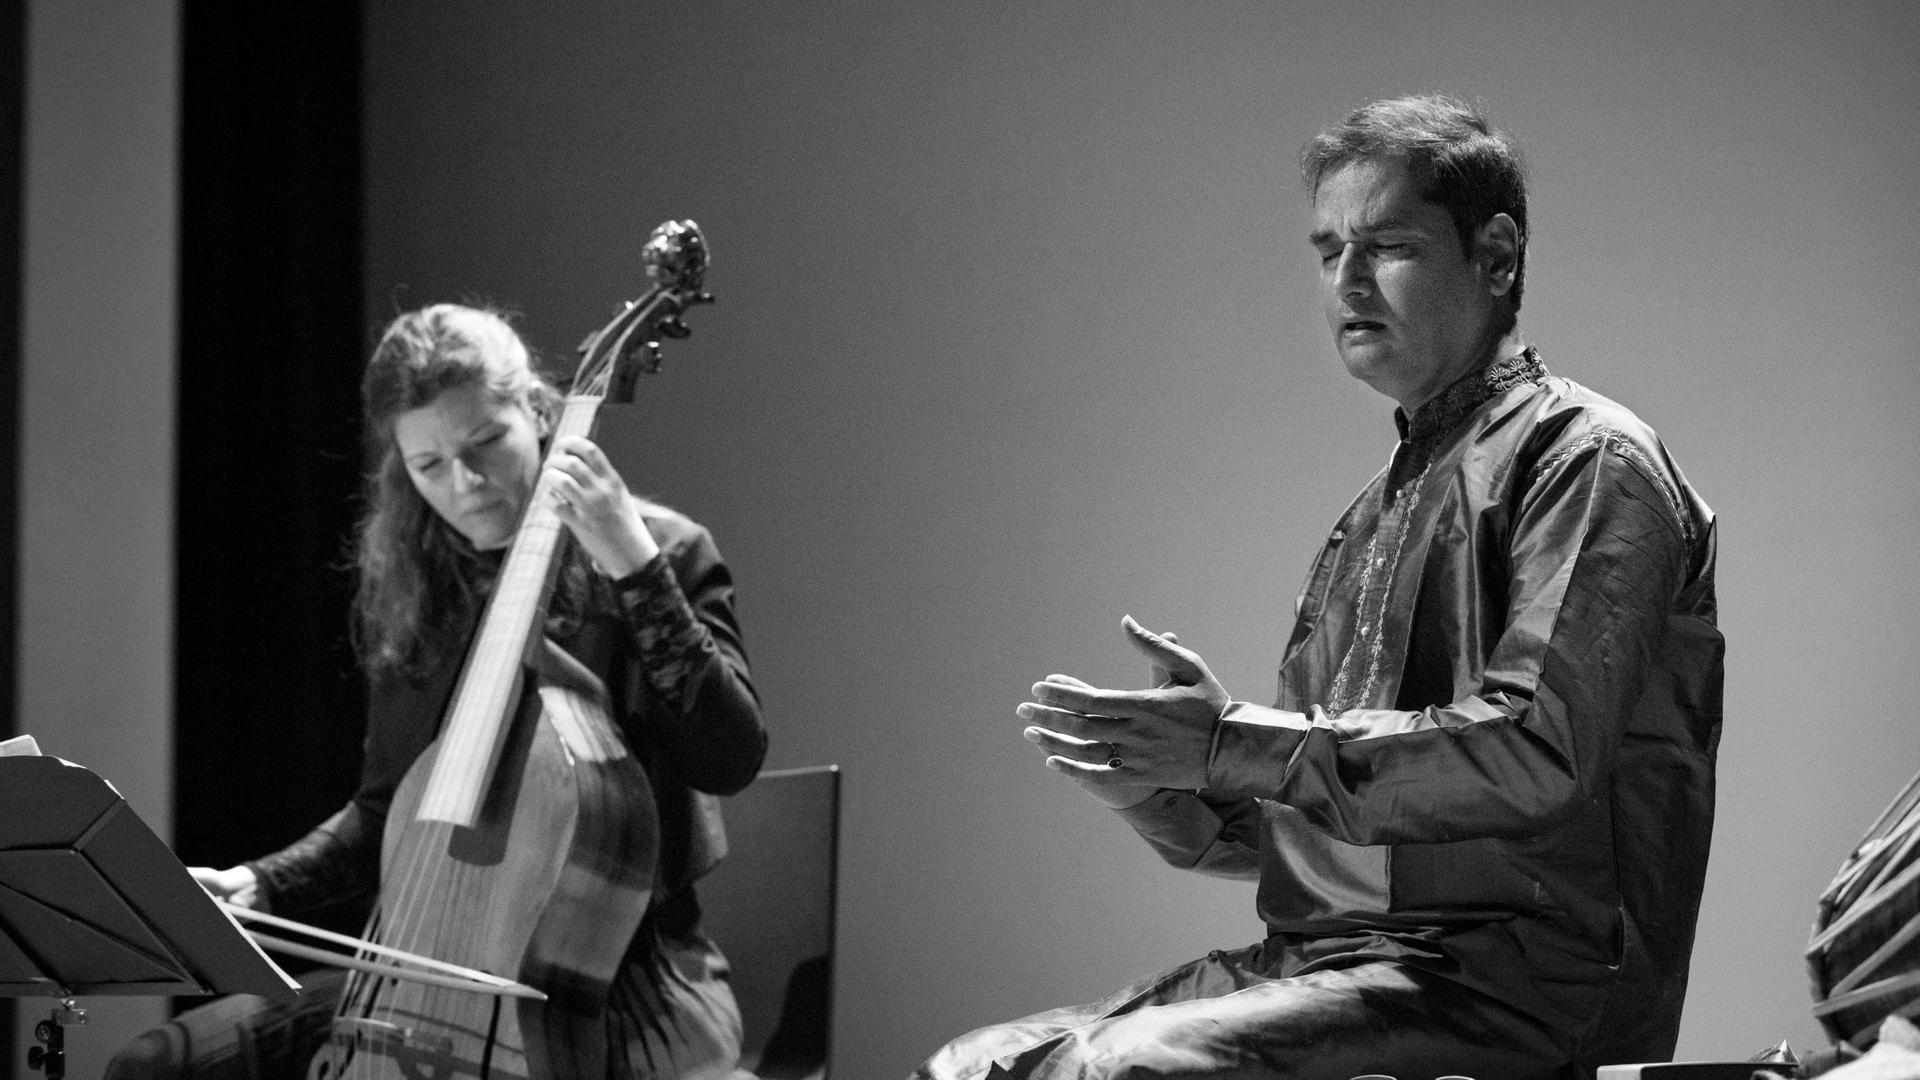 Eine Frau spielt auf einem Streichinstrument, einer Gambe, rechts neben ihr sitzt ein Mann und singt. Beide wirken versunken in die Musik. Das Foto ist in Grautönen aufgenommen.